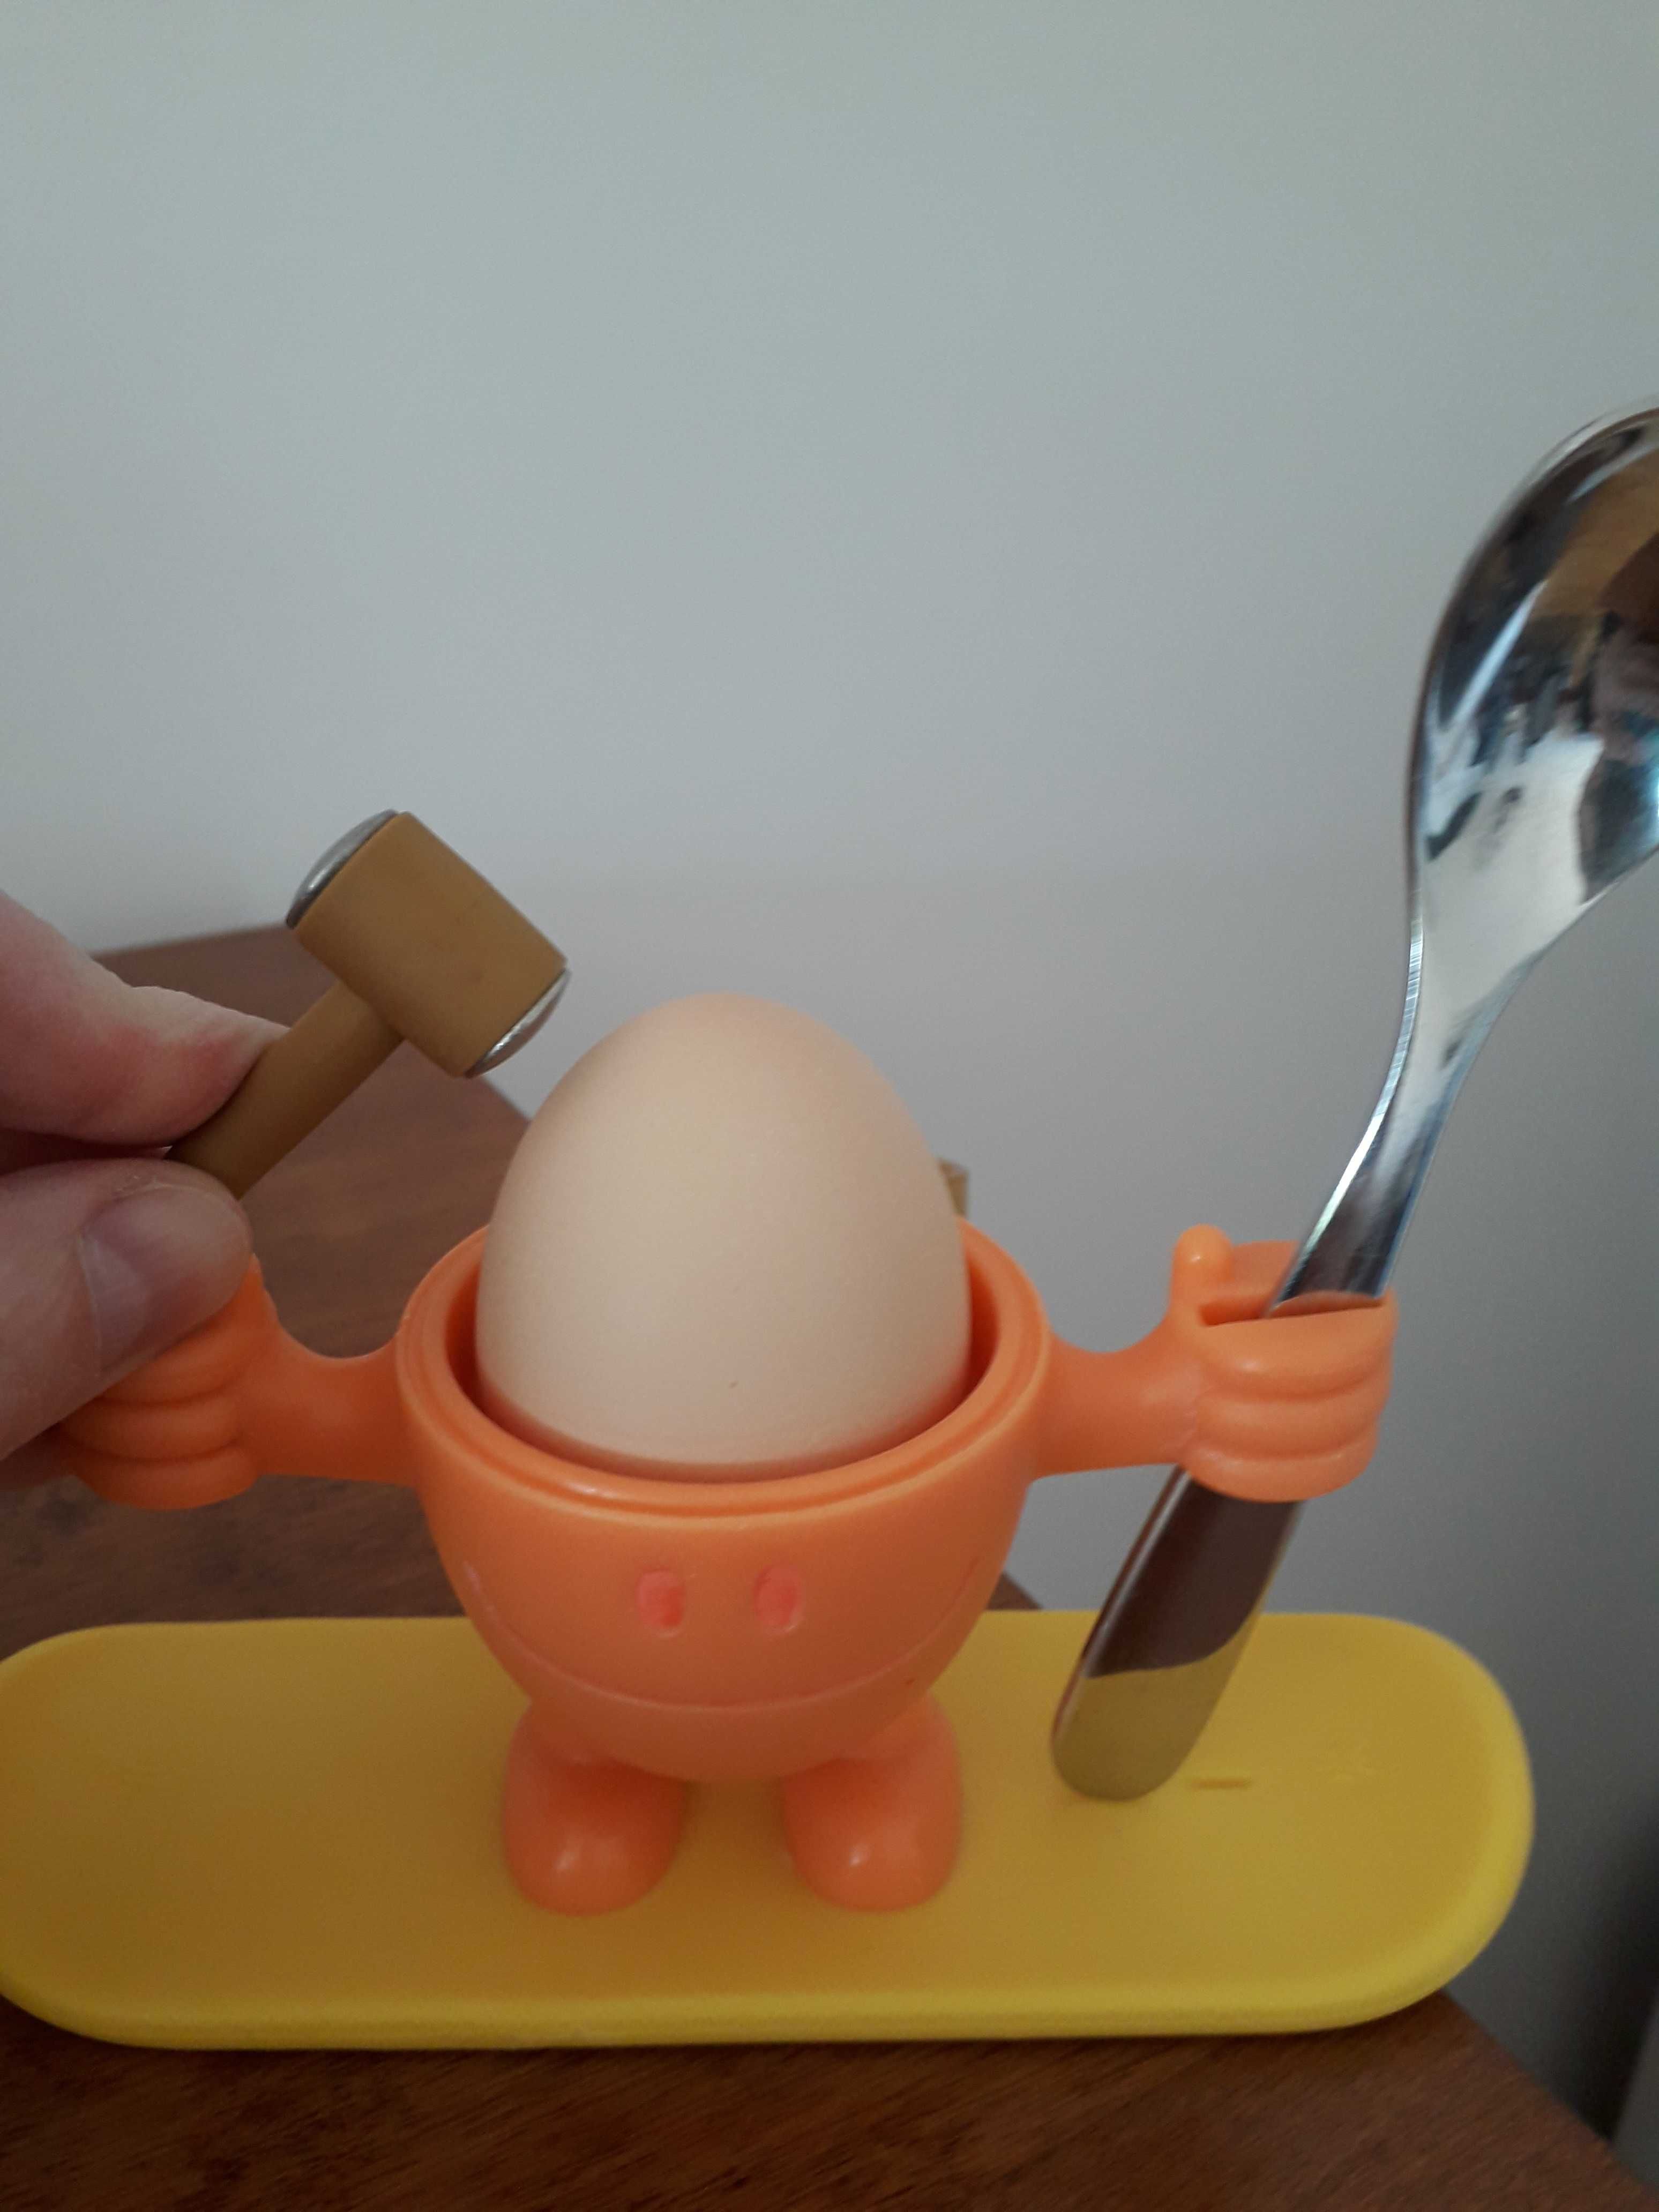 Kieliszek z podstawką na jajko dla dzieci McEgg firmy WMF